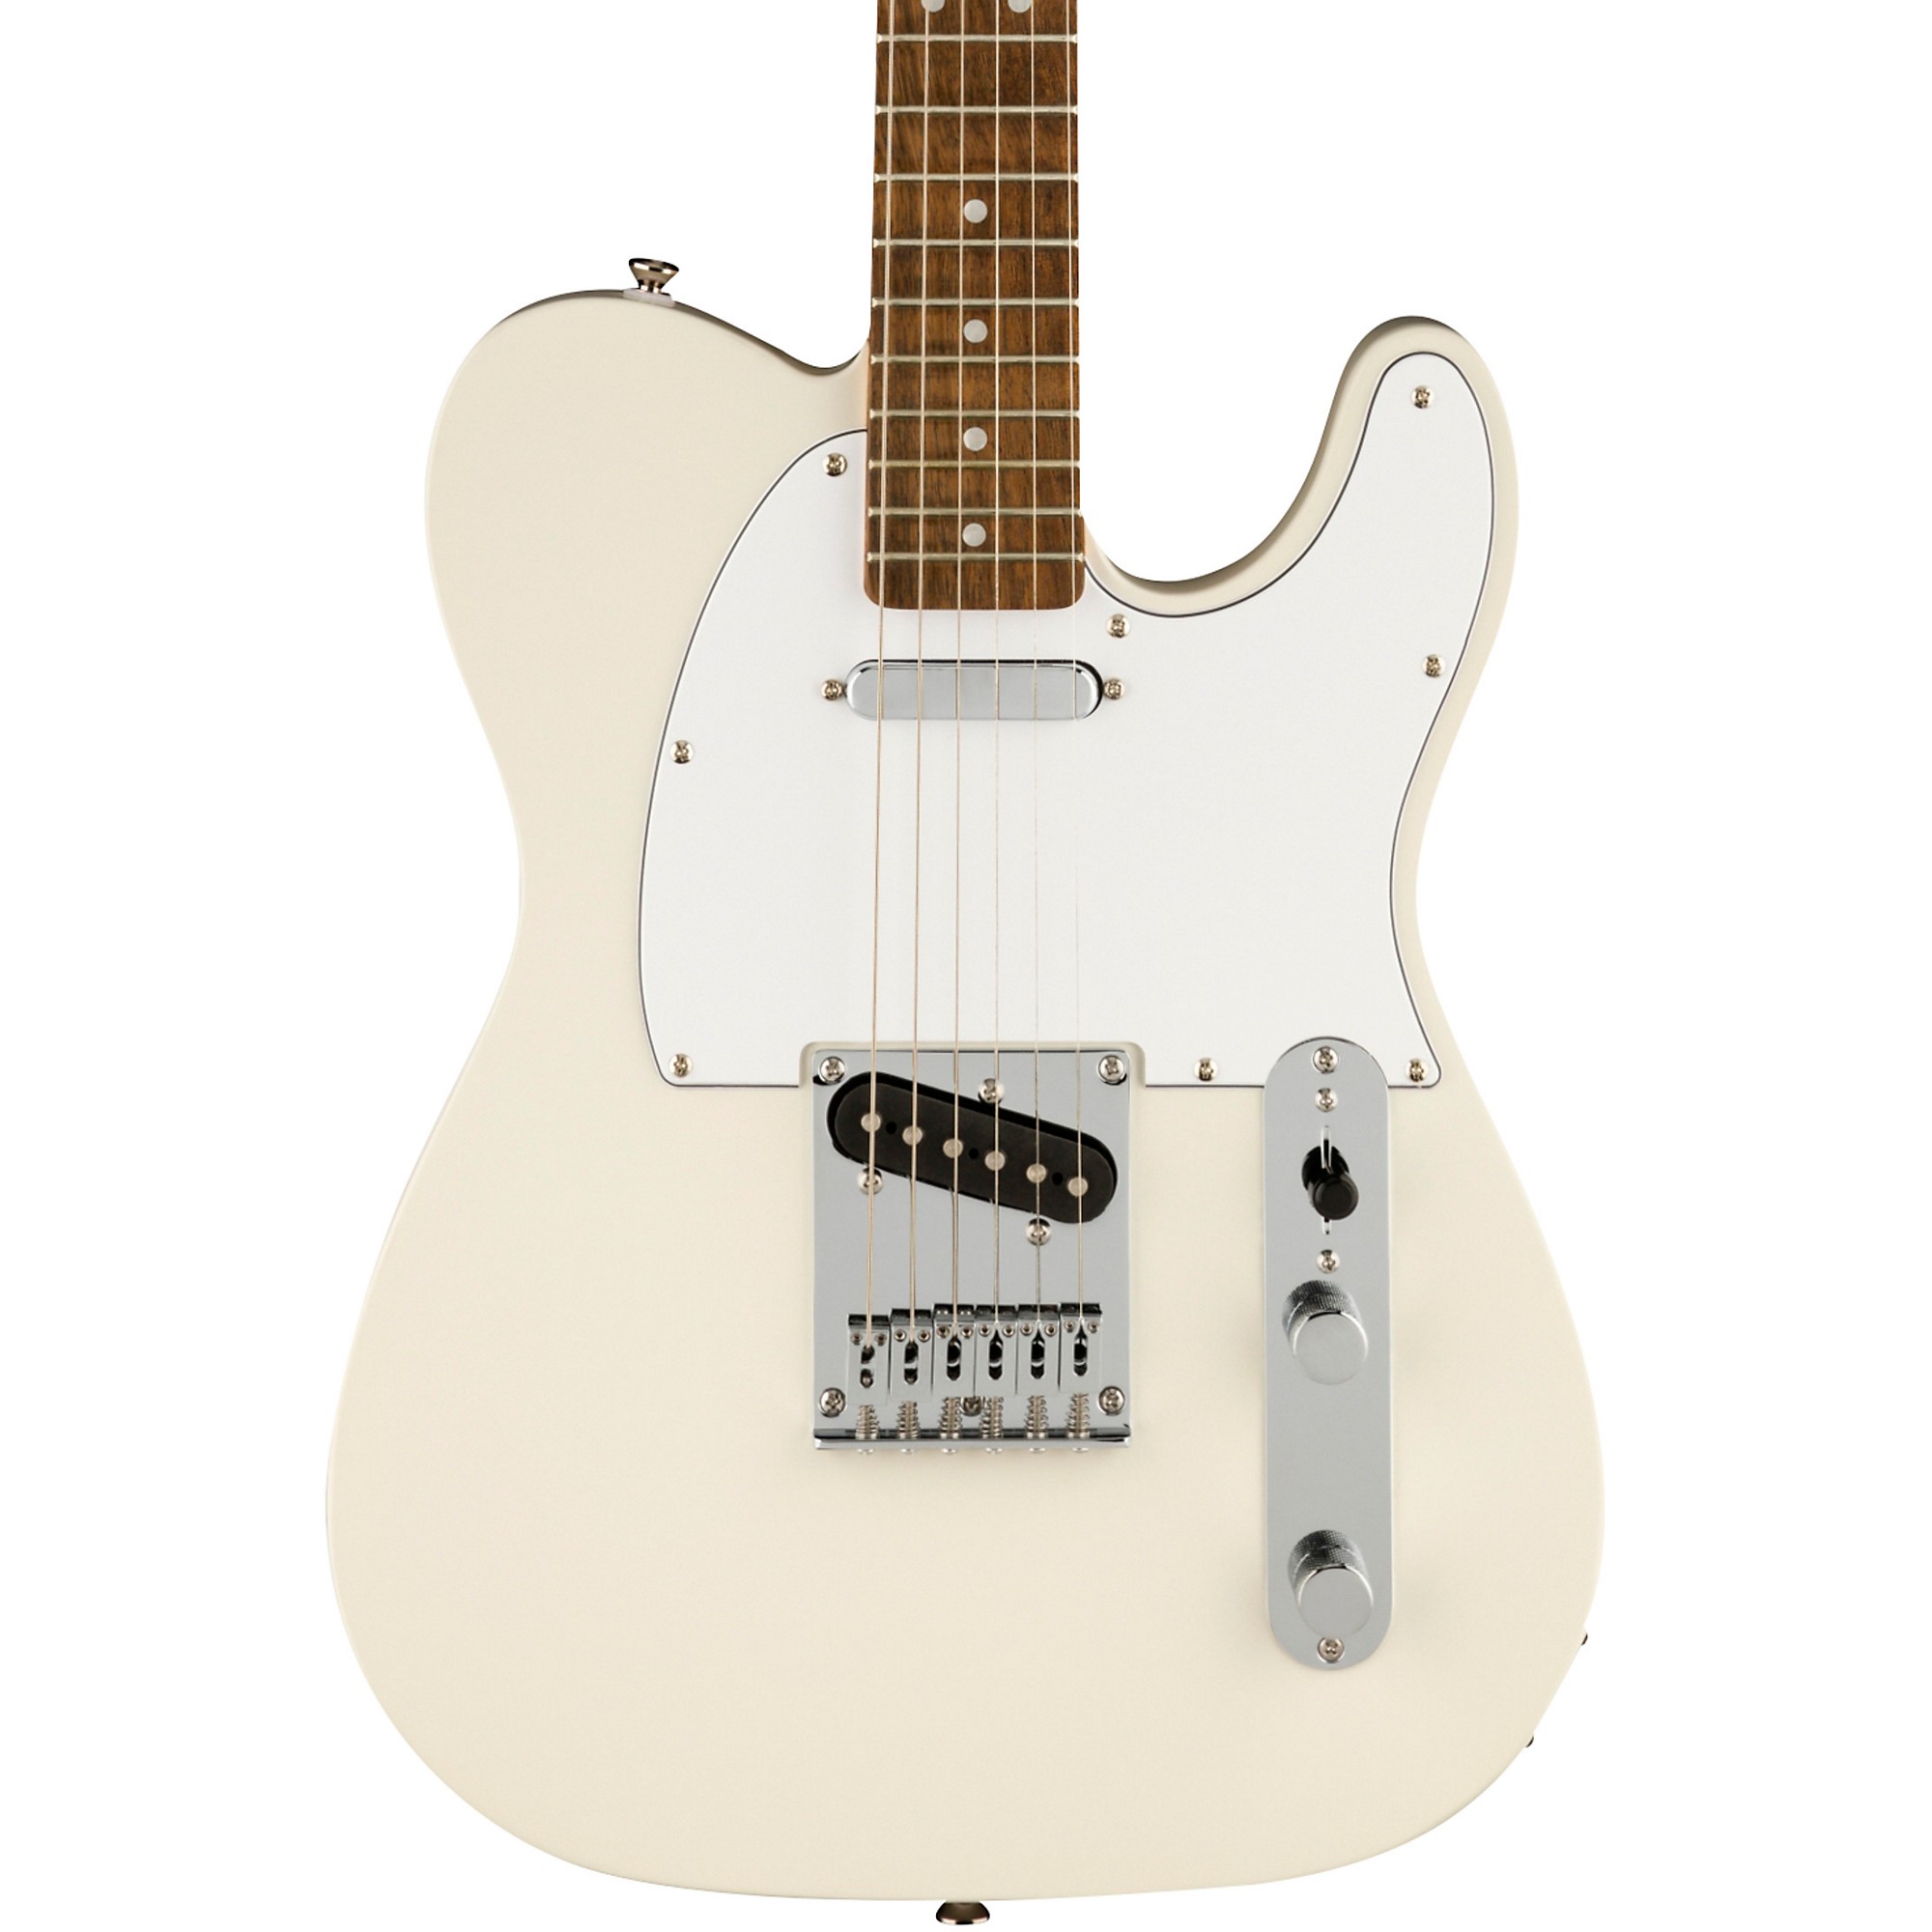 Squier Affinity Series Telecaster Guitar White | Guitar Center